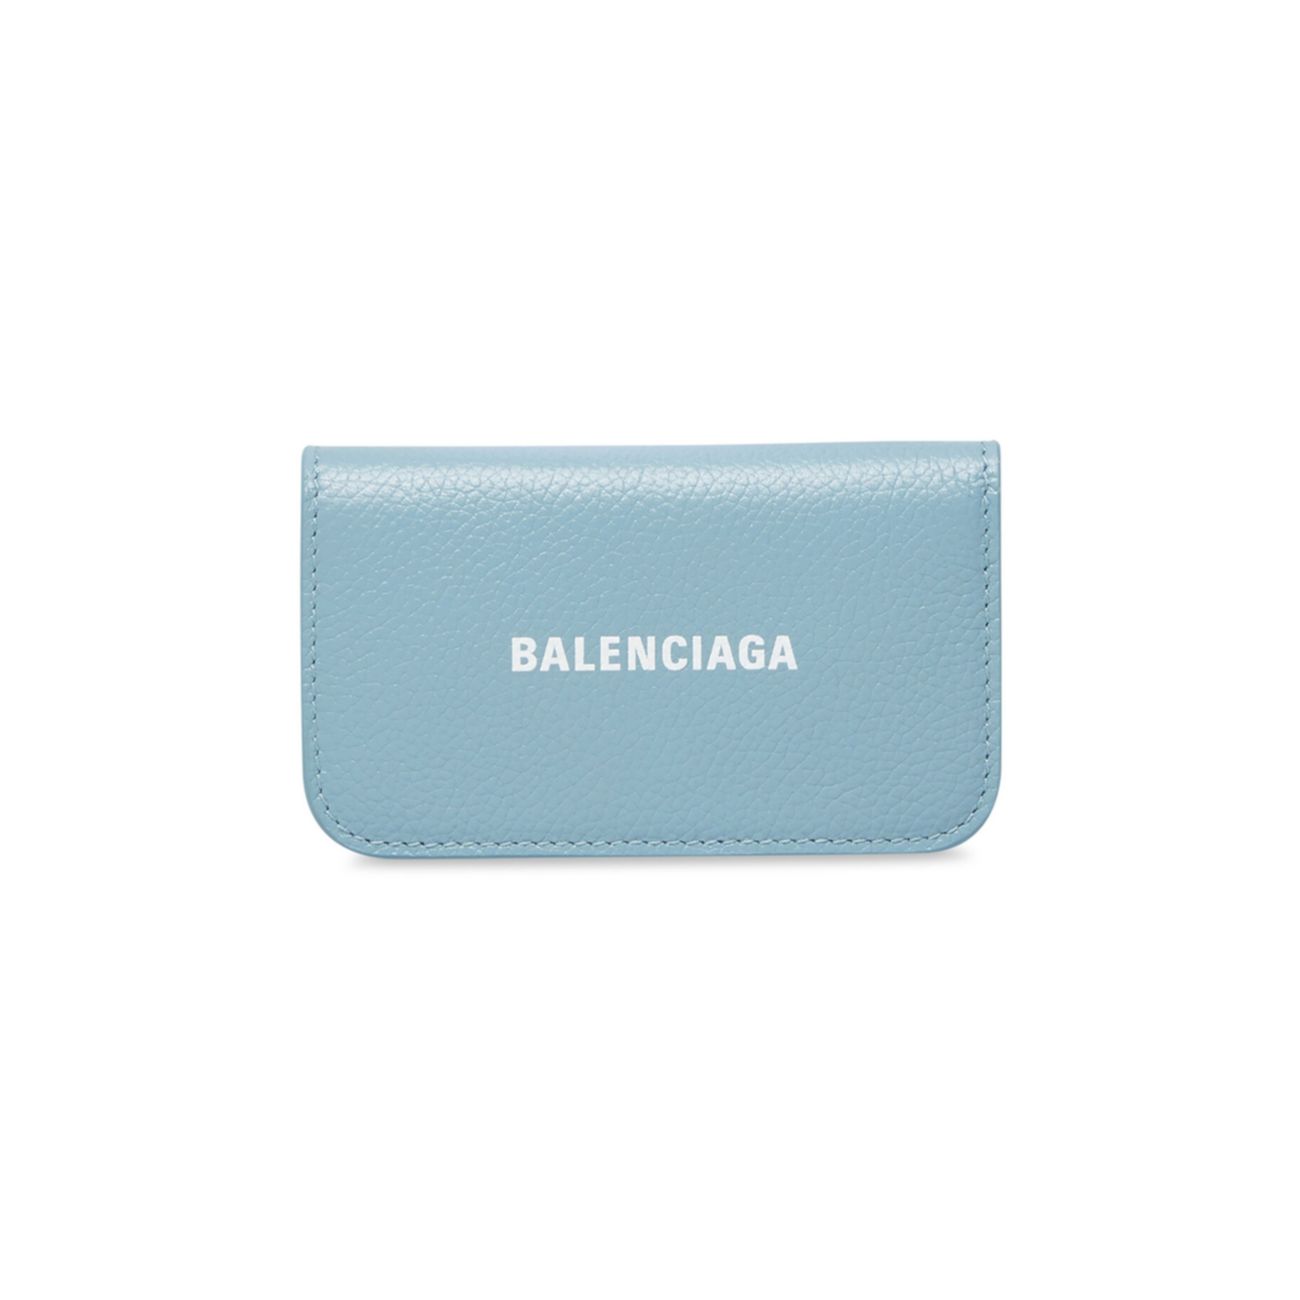 Кейс для наличных денег Balenciaga